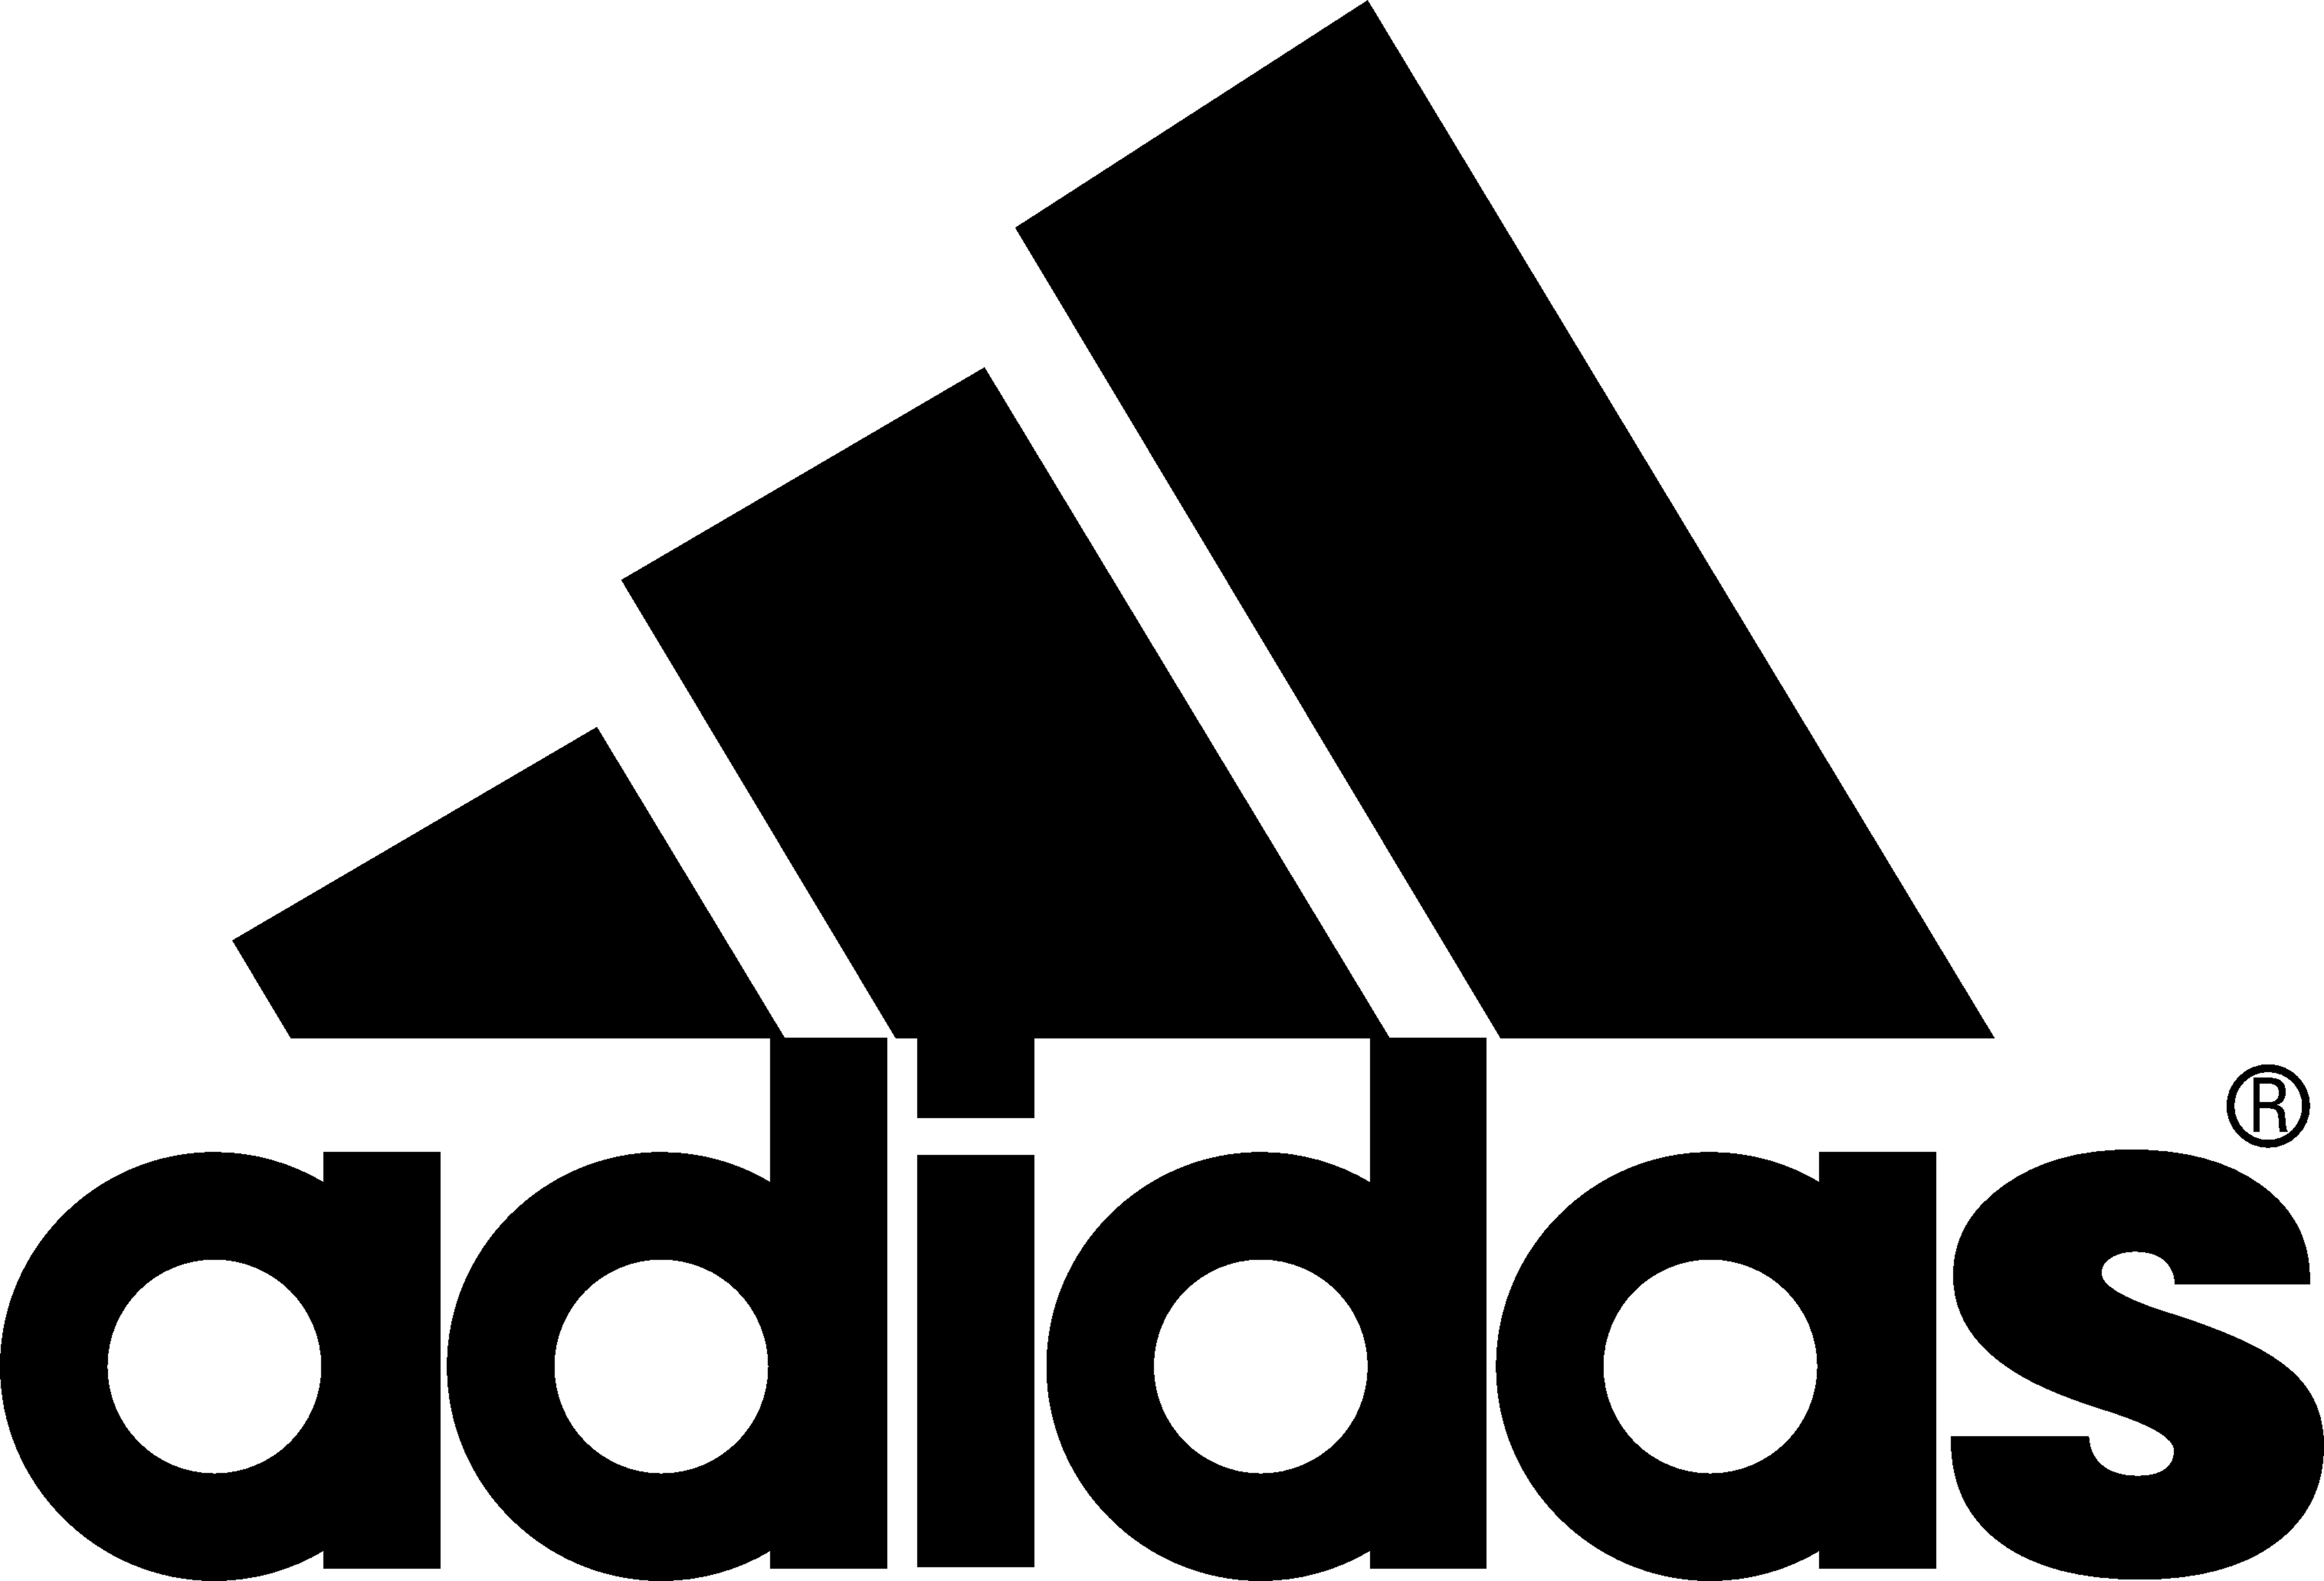 adidas 03 logo vector